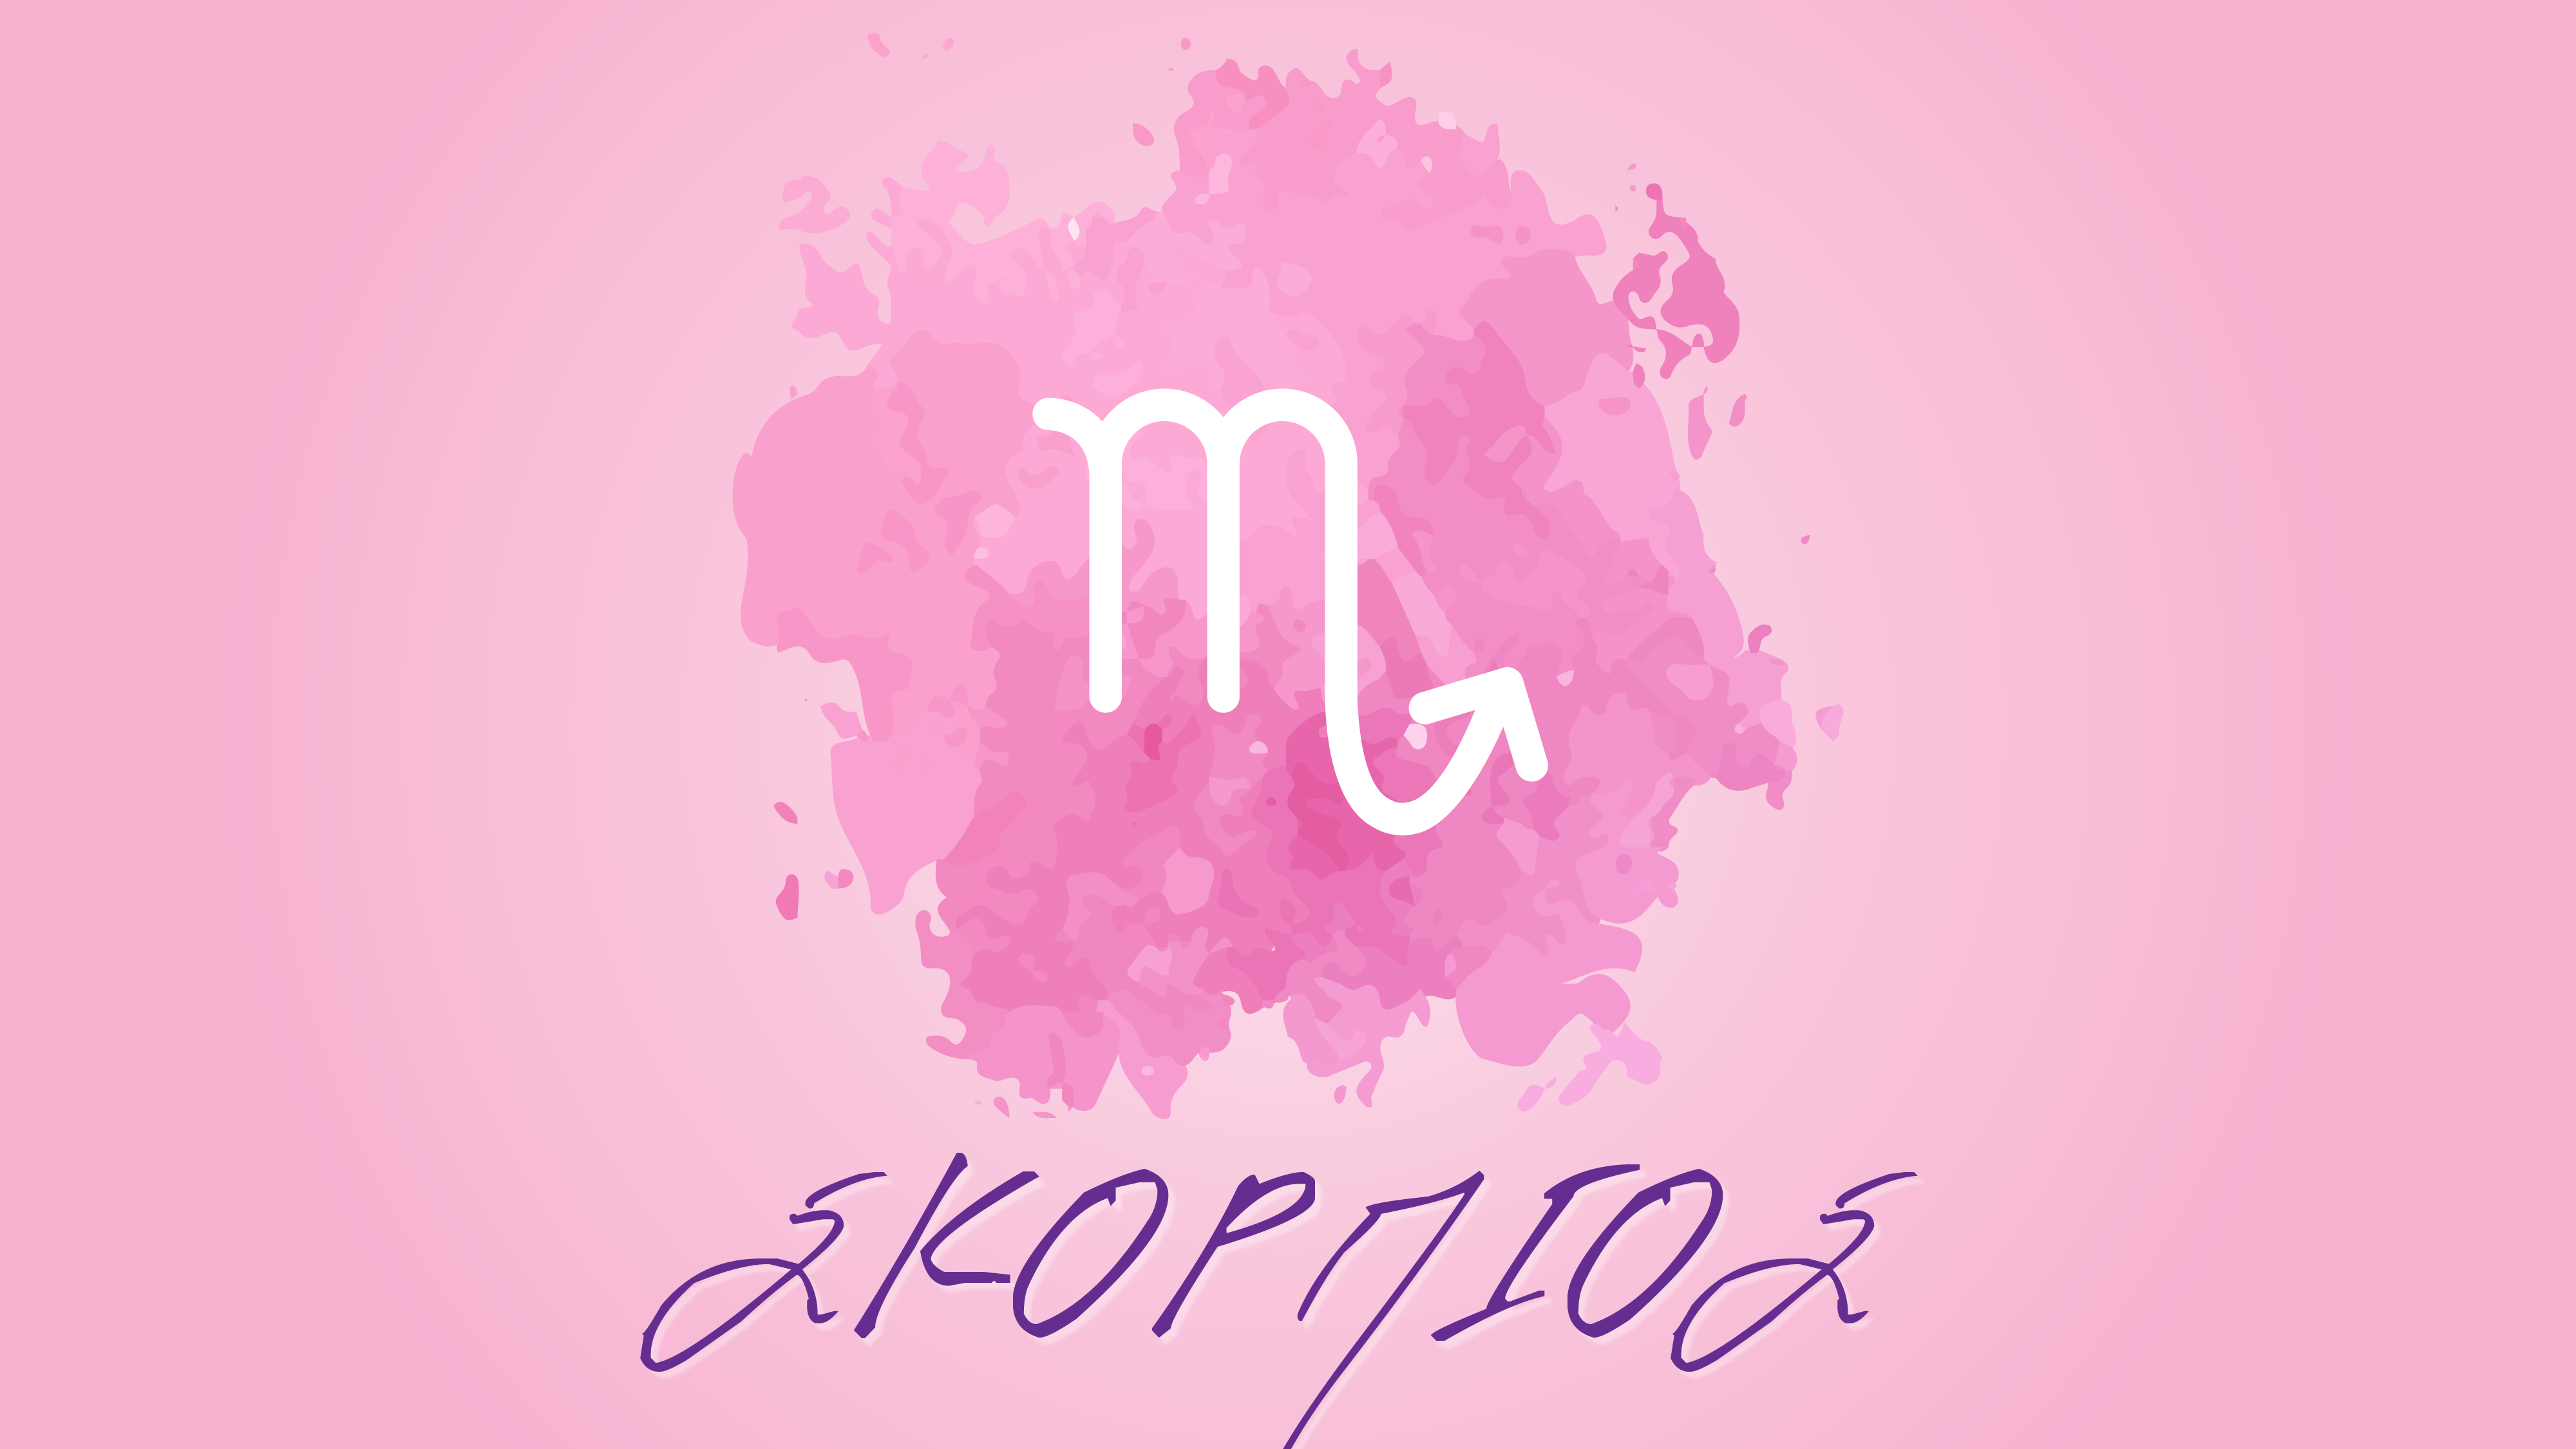 Σκορπιός – Μηνιαίες αστρολογικές προβλέψεις Ιουνίου 2020 από την Αλίντα Κανάκη !